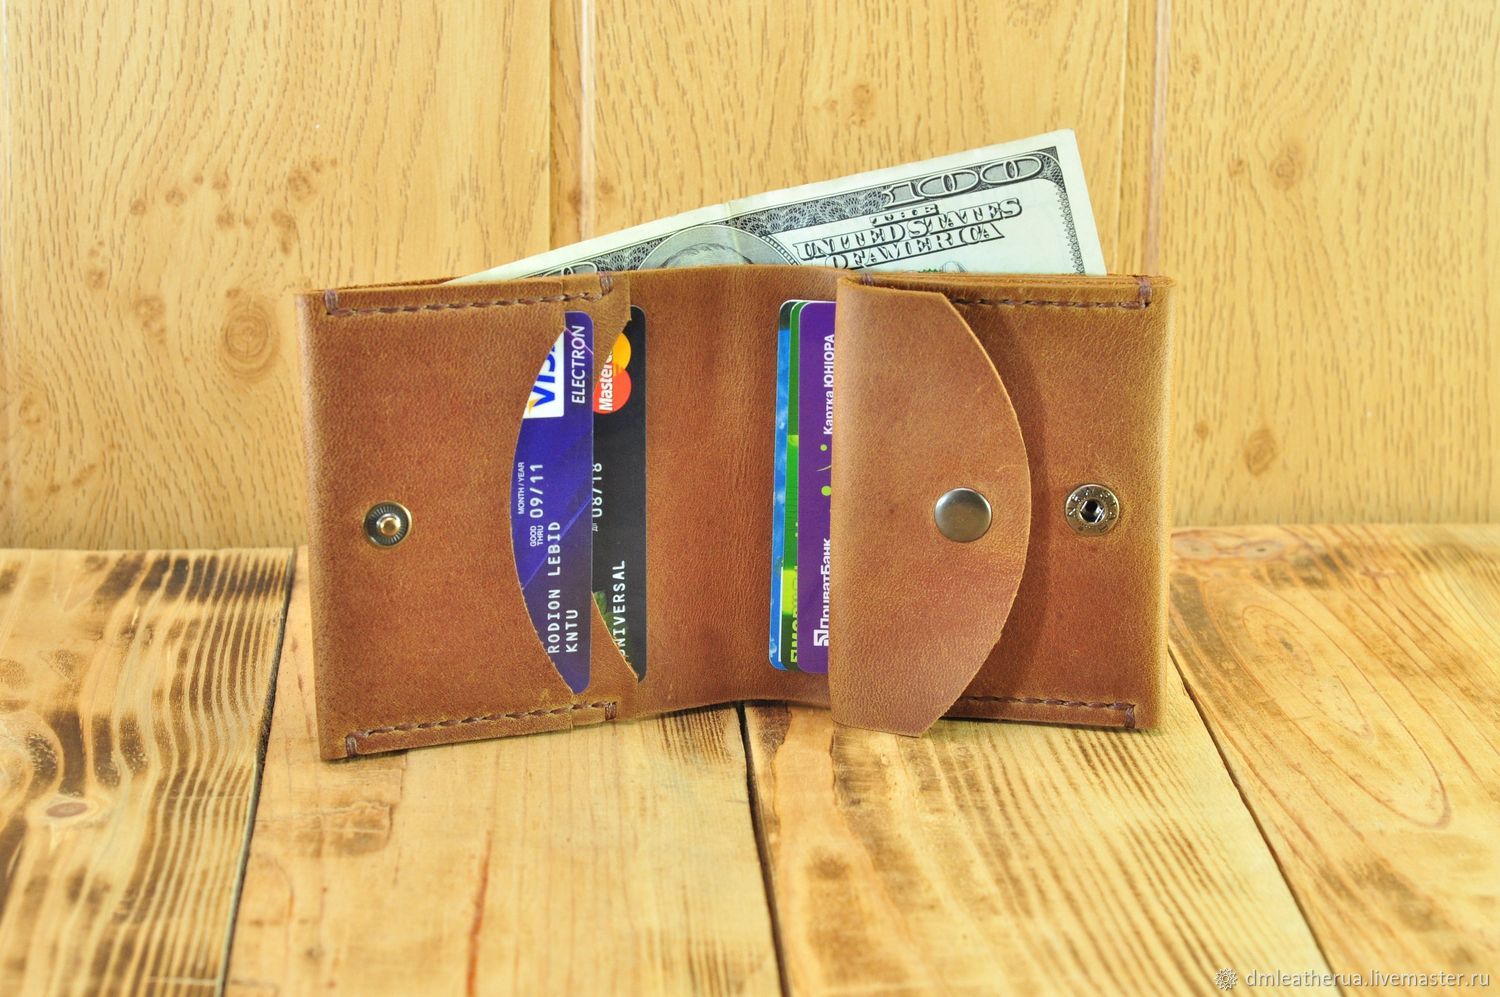 Кожаный бумажник с потайным карманом, Кошельки, Алексадровка,  Фото №1